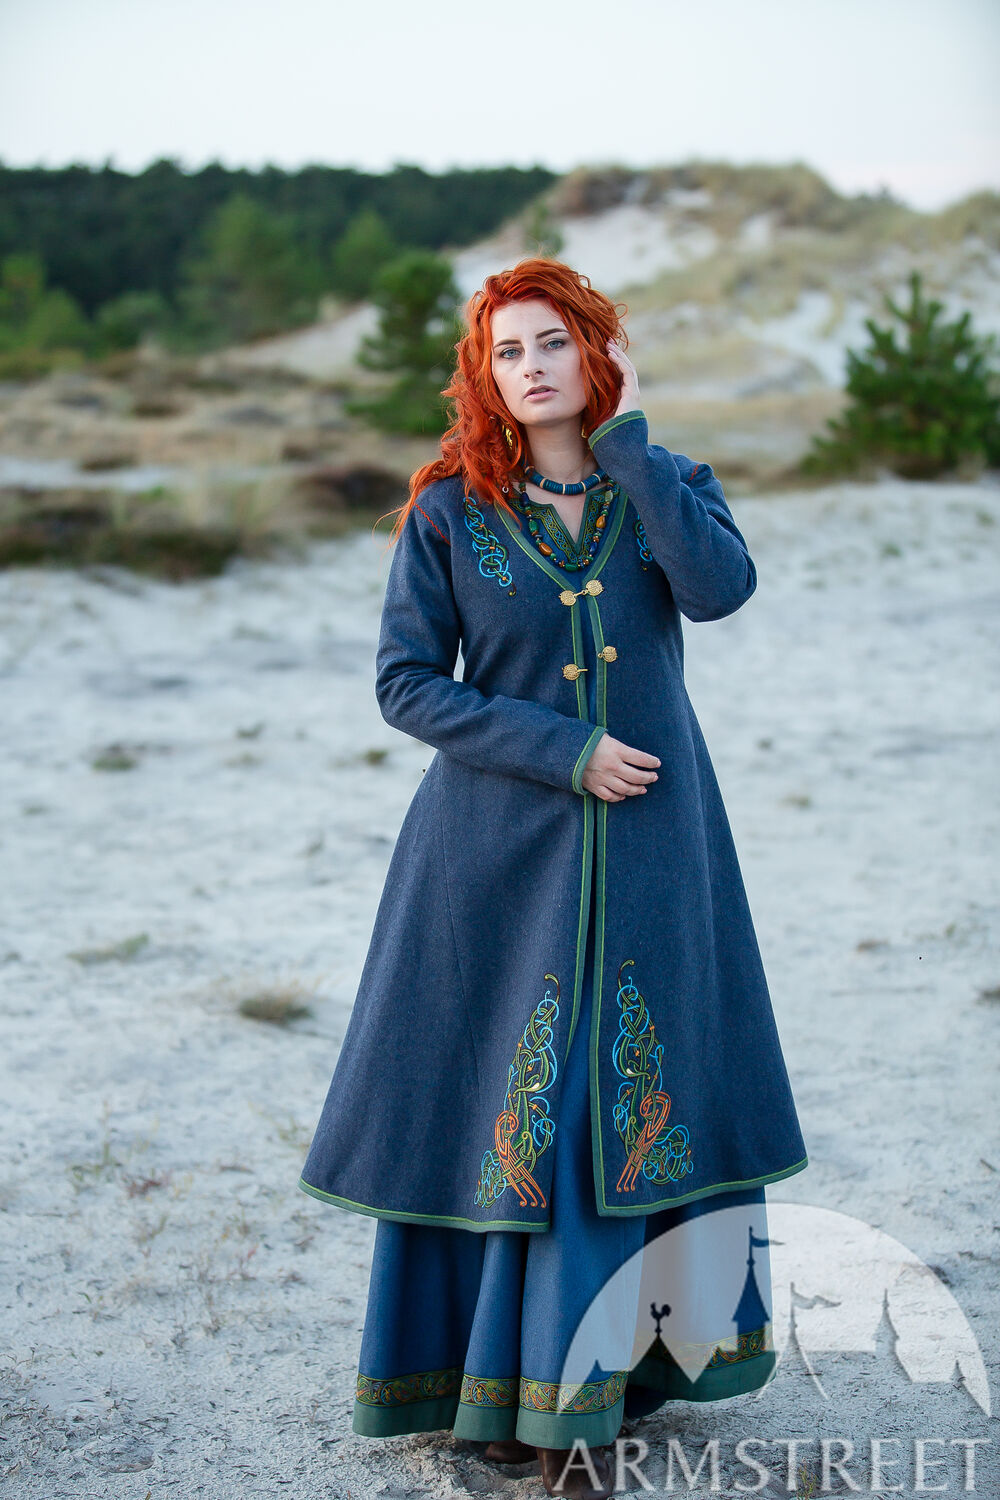 Manteau viking en laine brodée pour femme "Hilda la Hautaine"